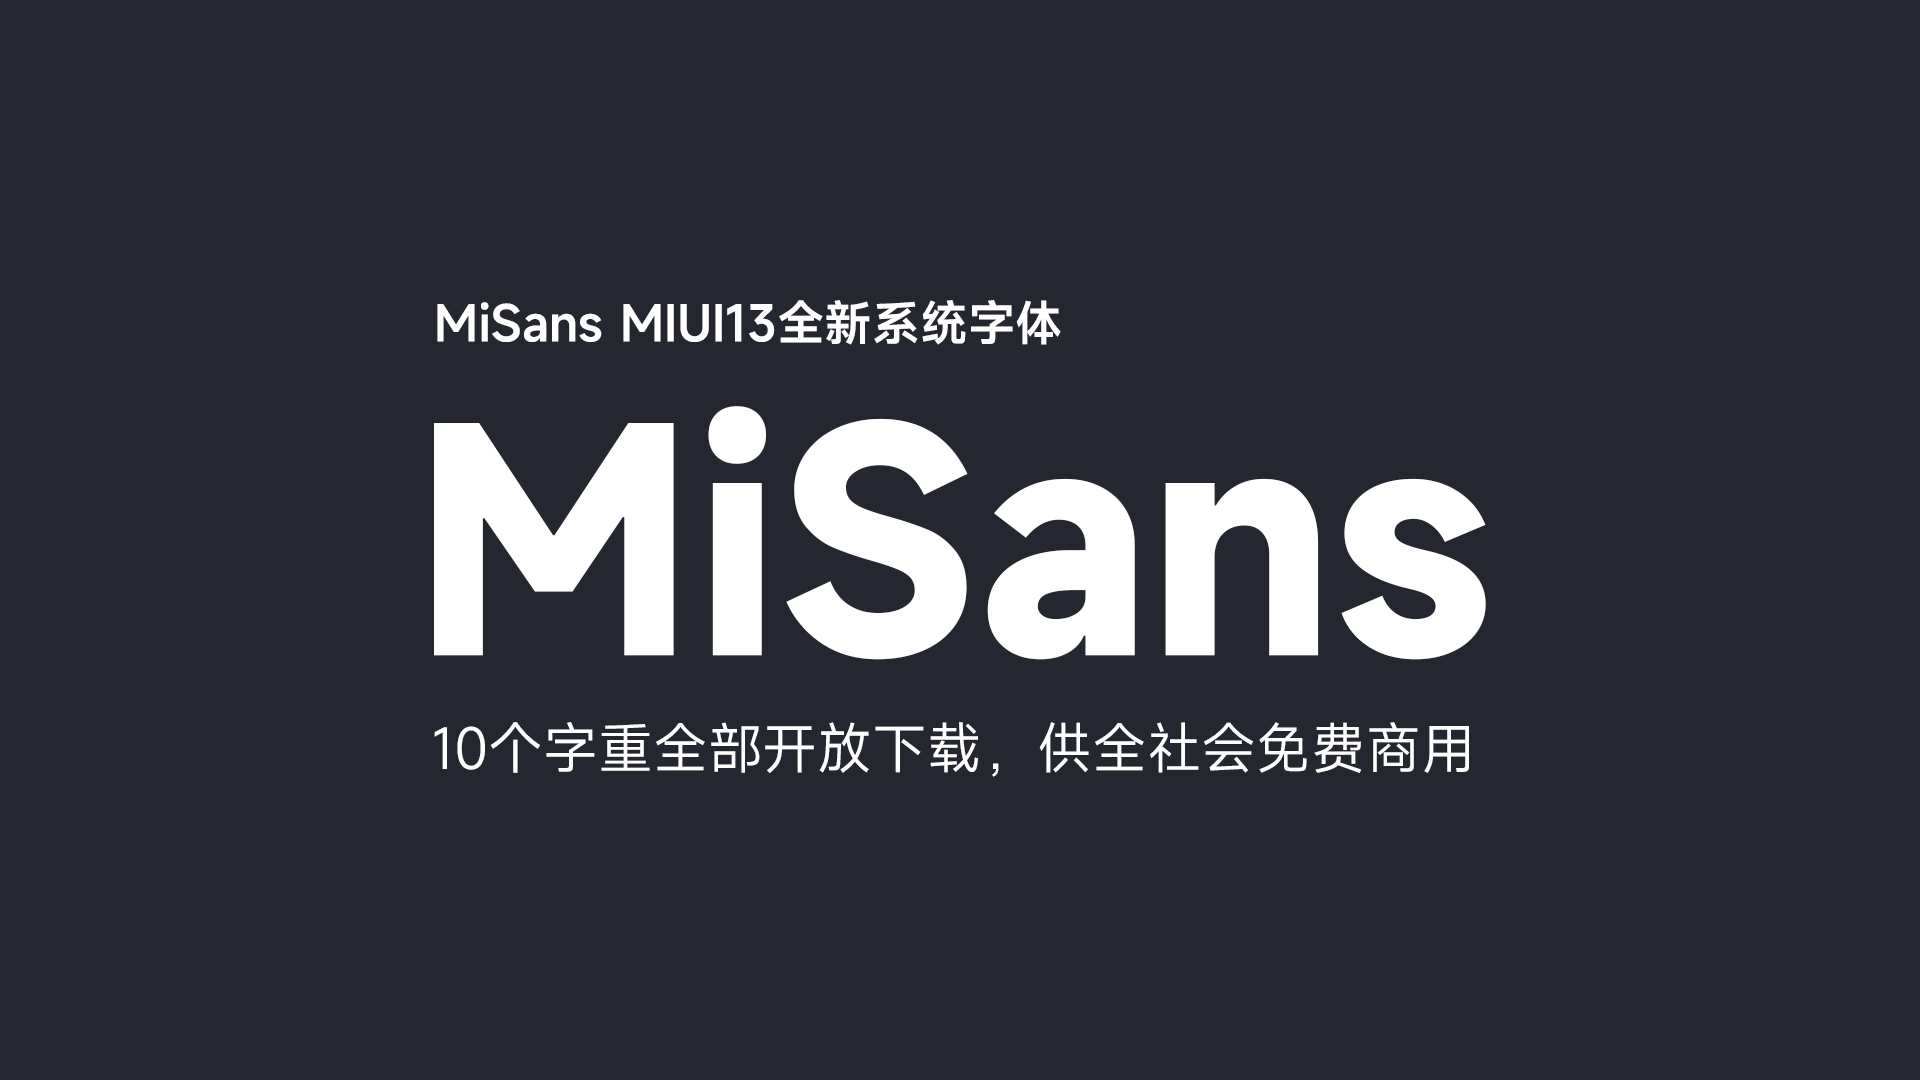 小米全新字体 MiSans 开放下载，供全社会免费商用